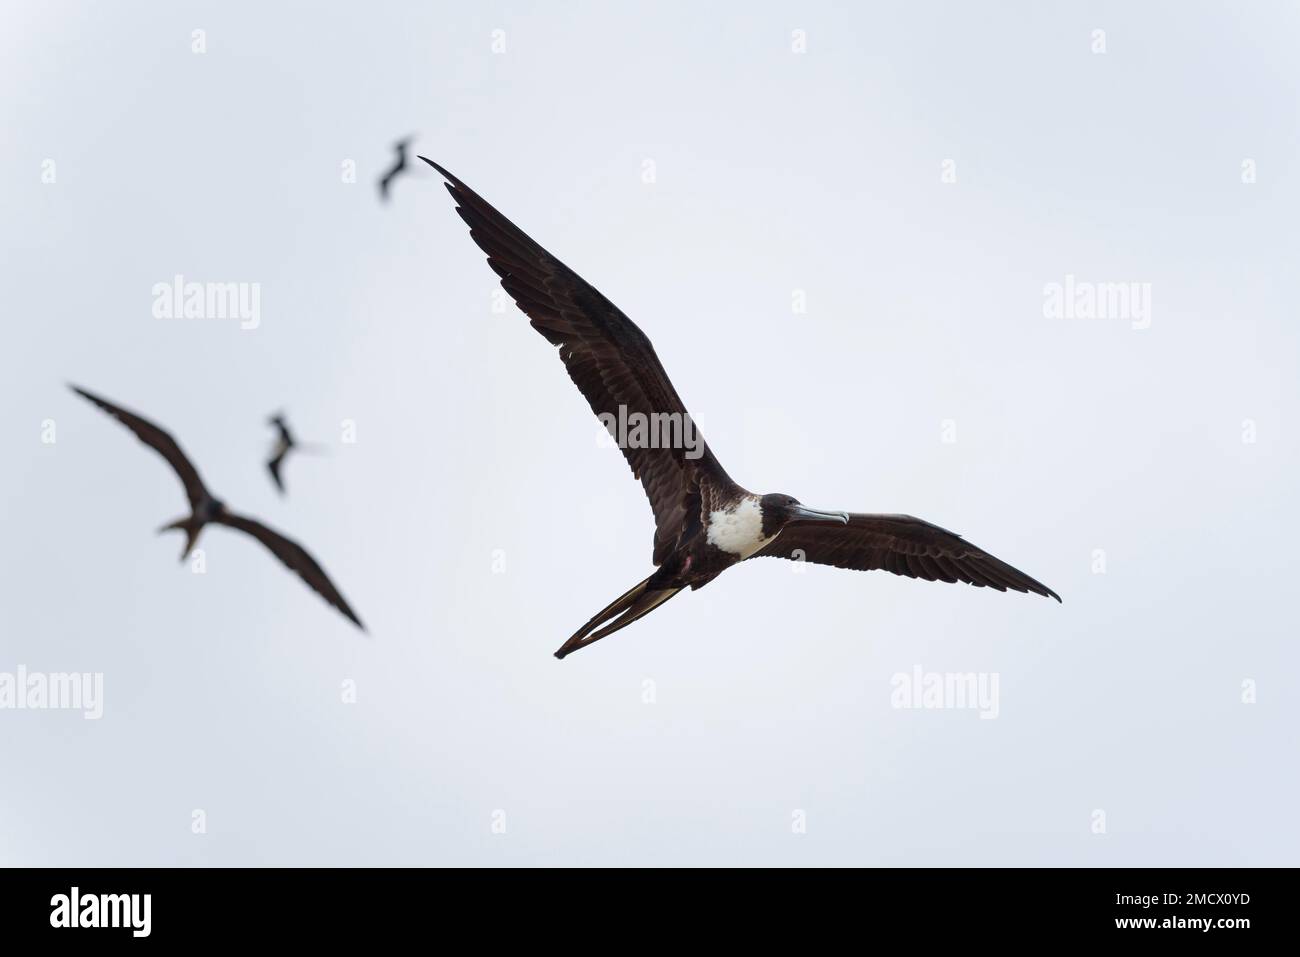 Magnifiques frégatebirds (Fregata magnifiens) en vol, province de Manabi, Équateur Banque D'Images